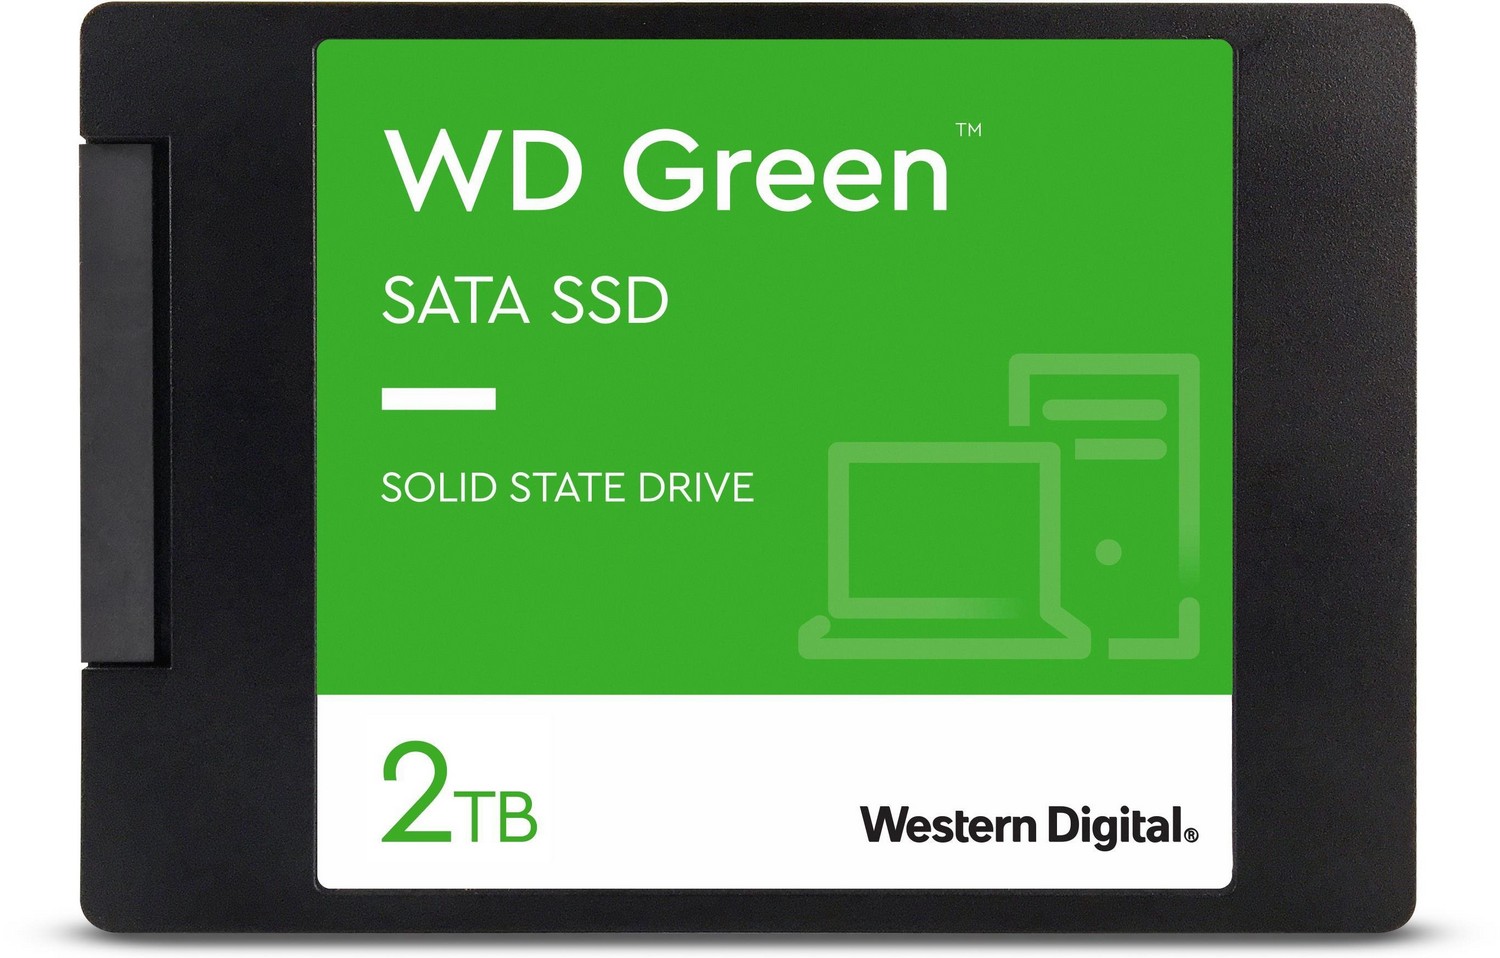 SSD disk - WD Green SSD 2TB